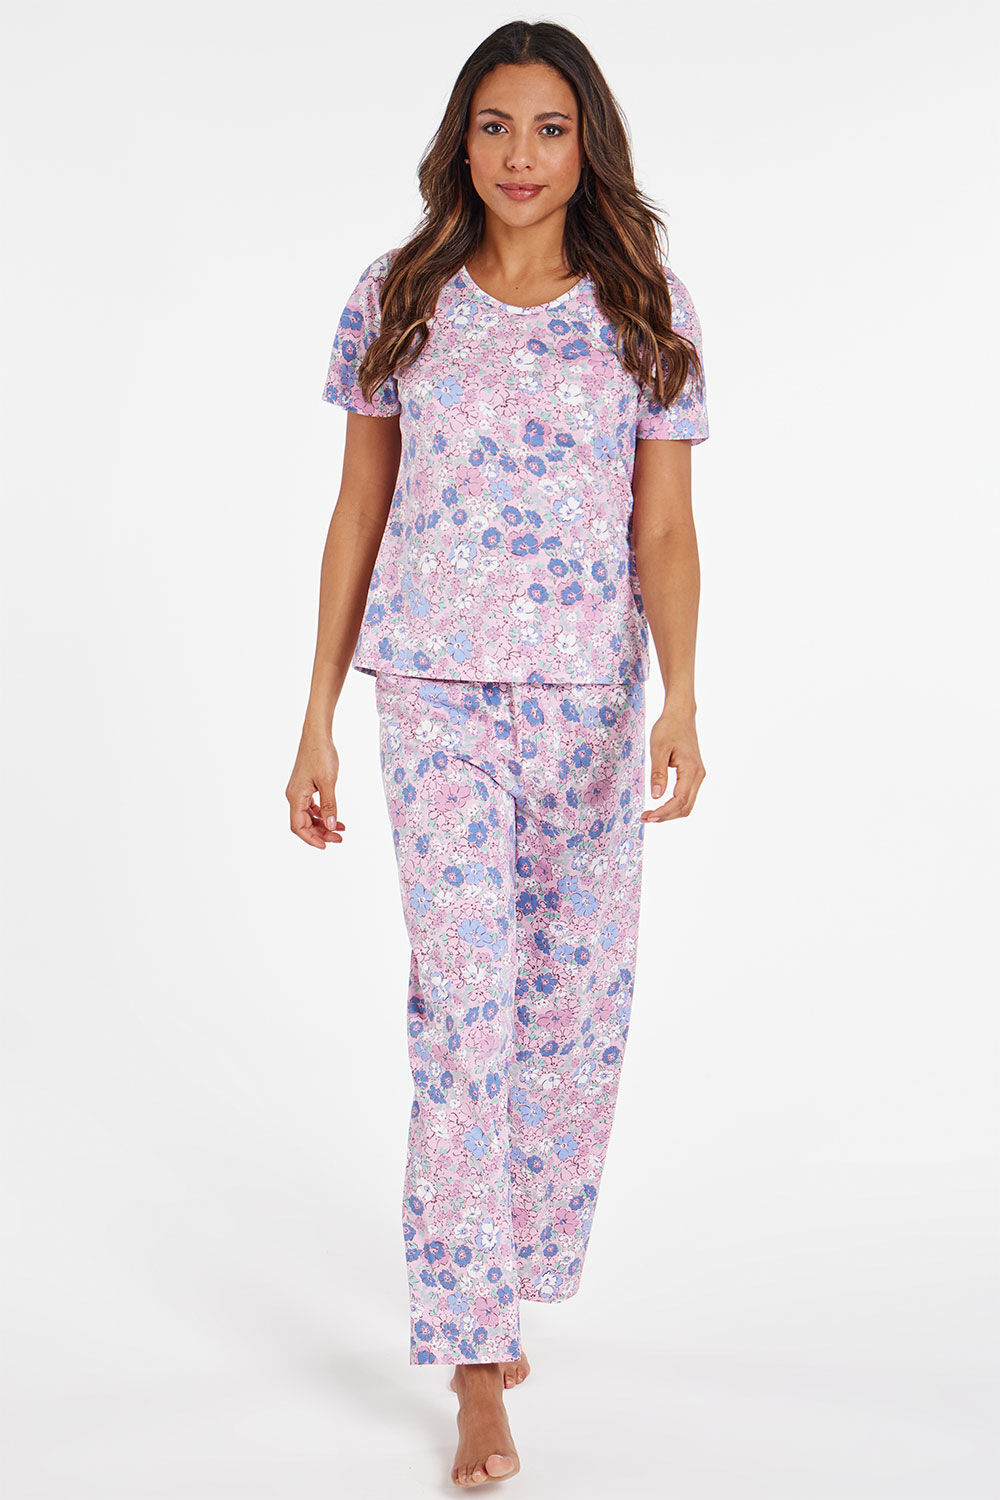 Bonmarche Pink Short Sleeve All Over Floral Print Pyjama Set, Size: 08-10